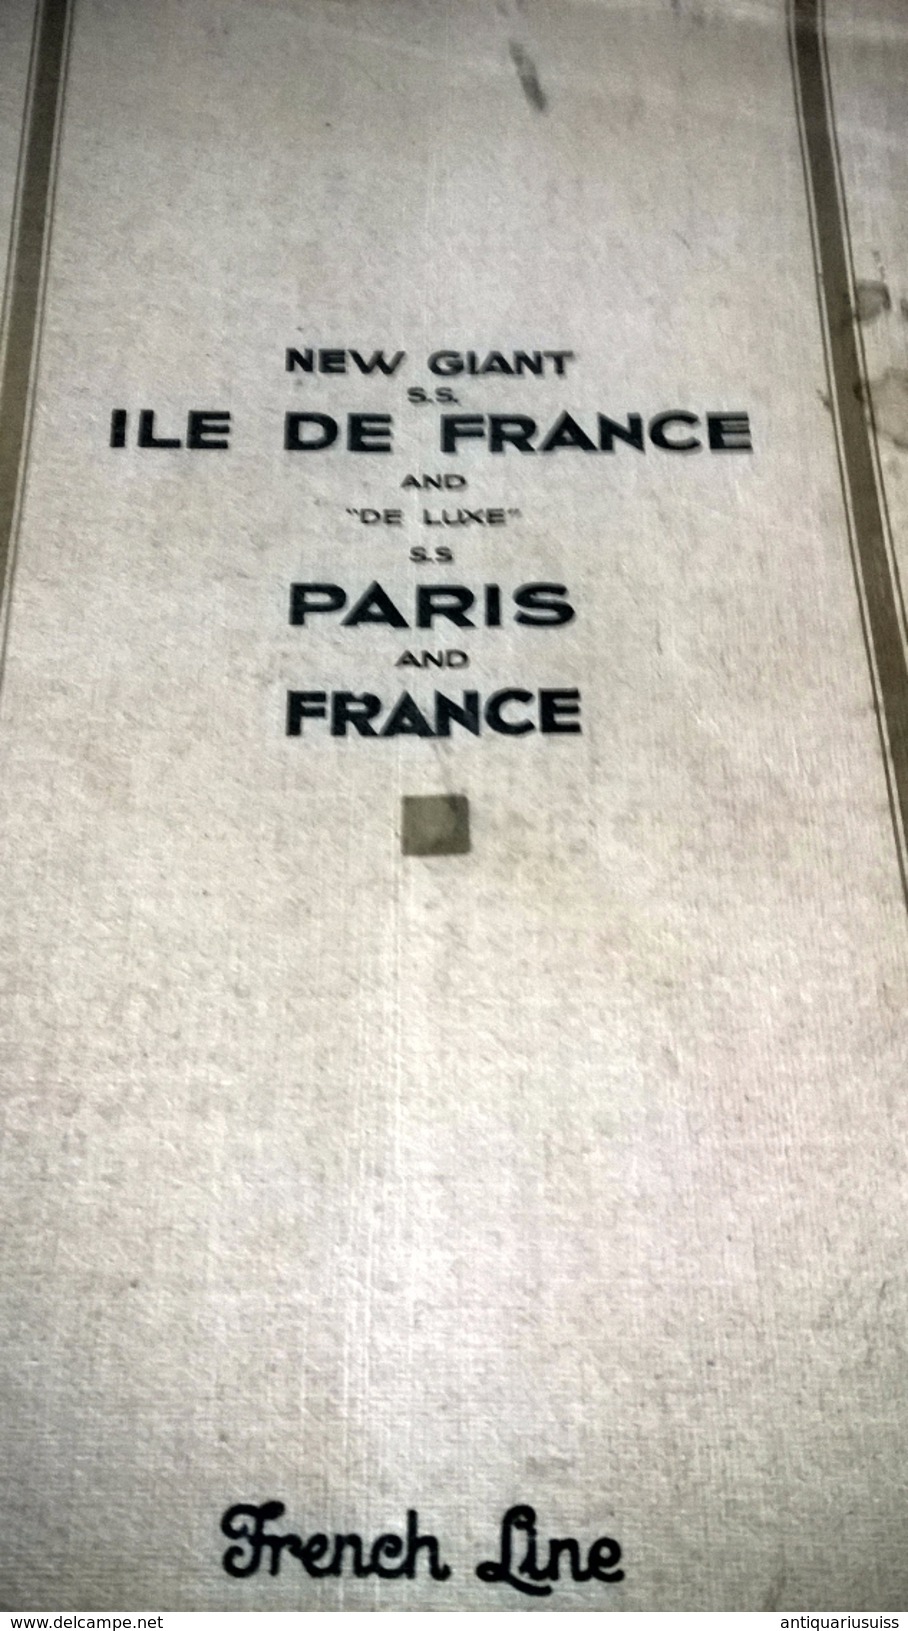 DOCUMENTS PAQUEBOT - New Giant S.S. ILE DE FRANCE And "De Luxe" S.S PARIS And FRANCE - French Line - Transatlantique - Dépliants Touristiques